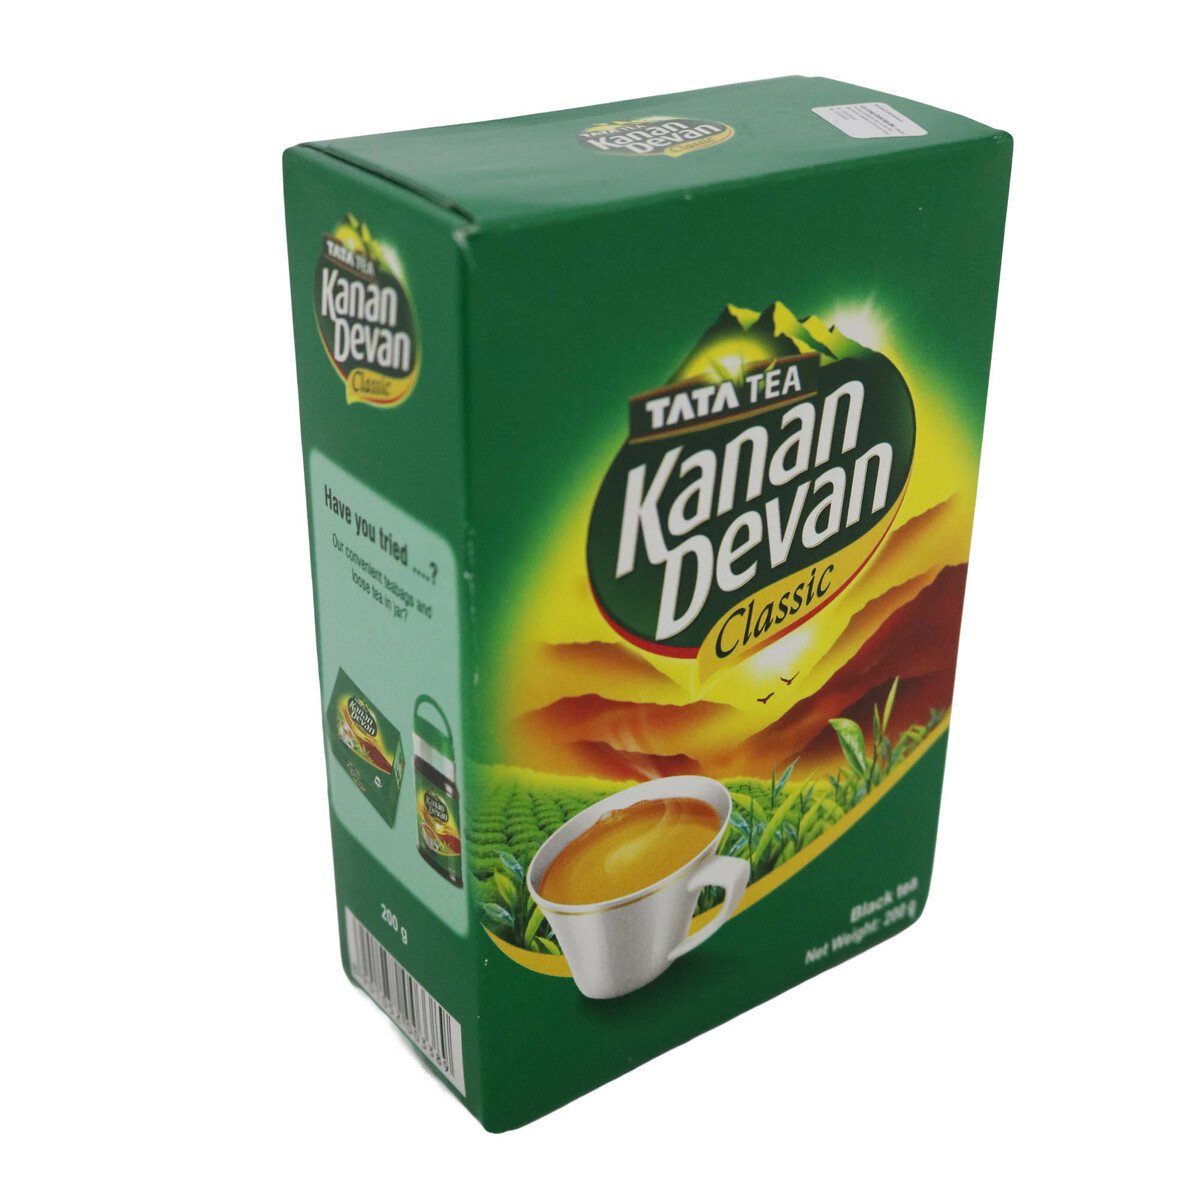 Kannan Devan Tea Dust 200g